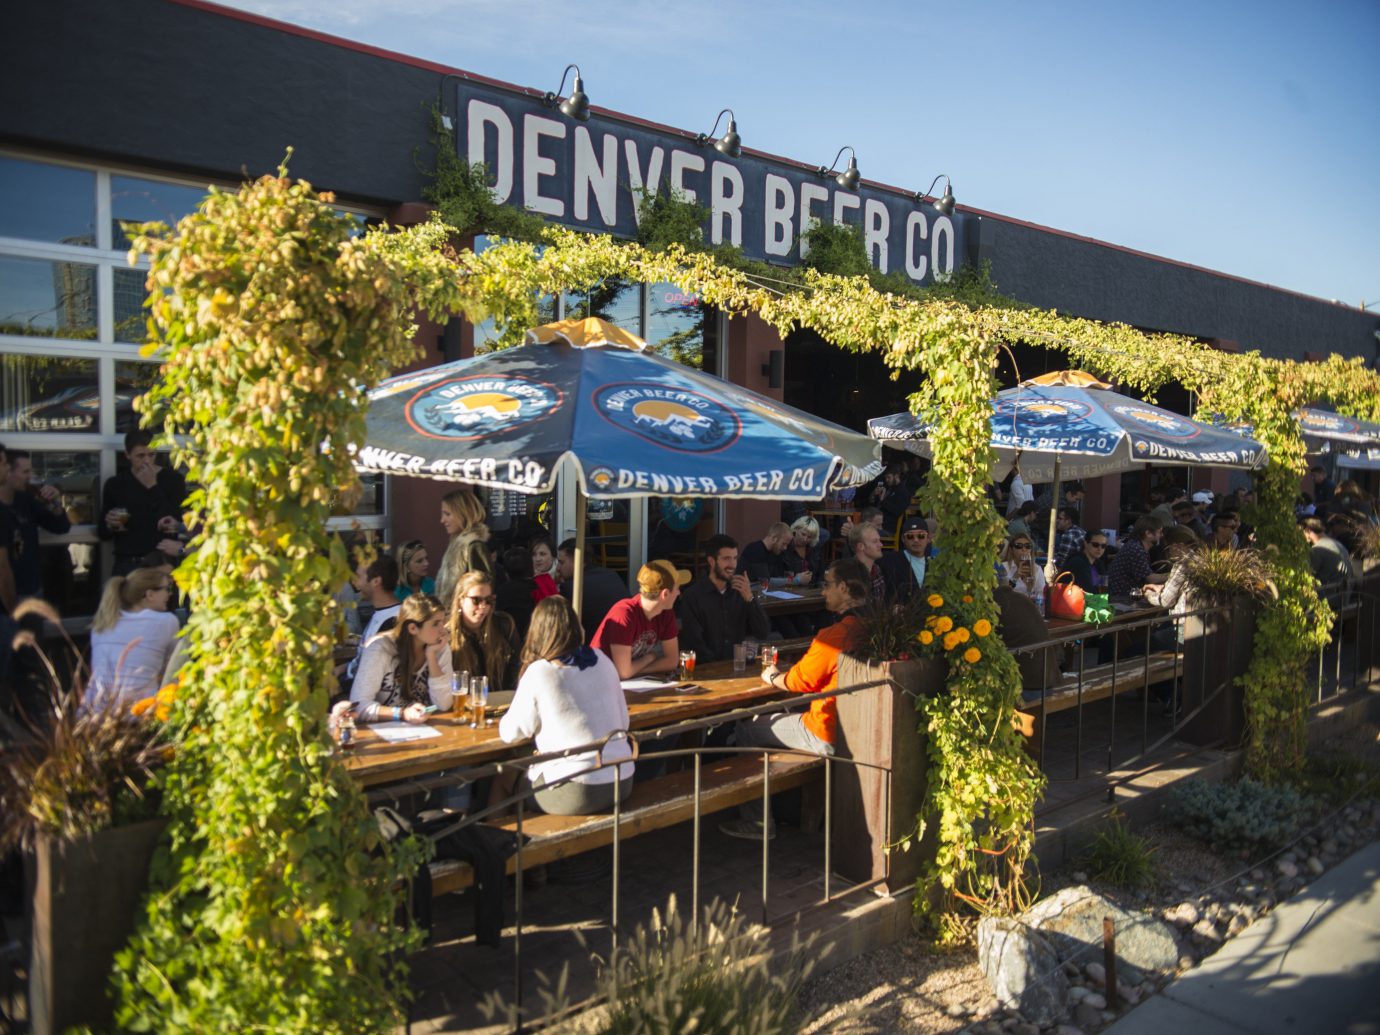 Beer garden in Denver, CO